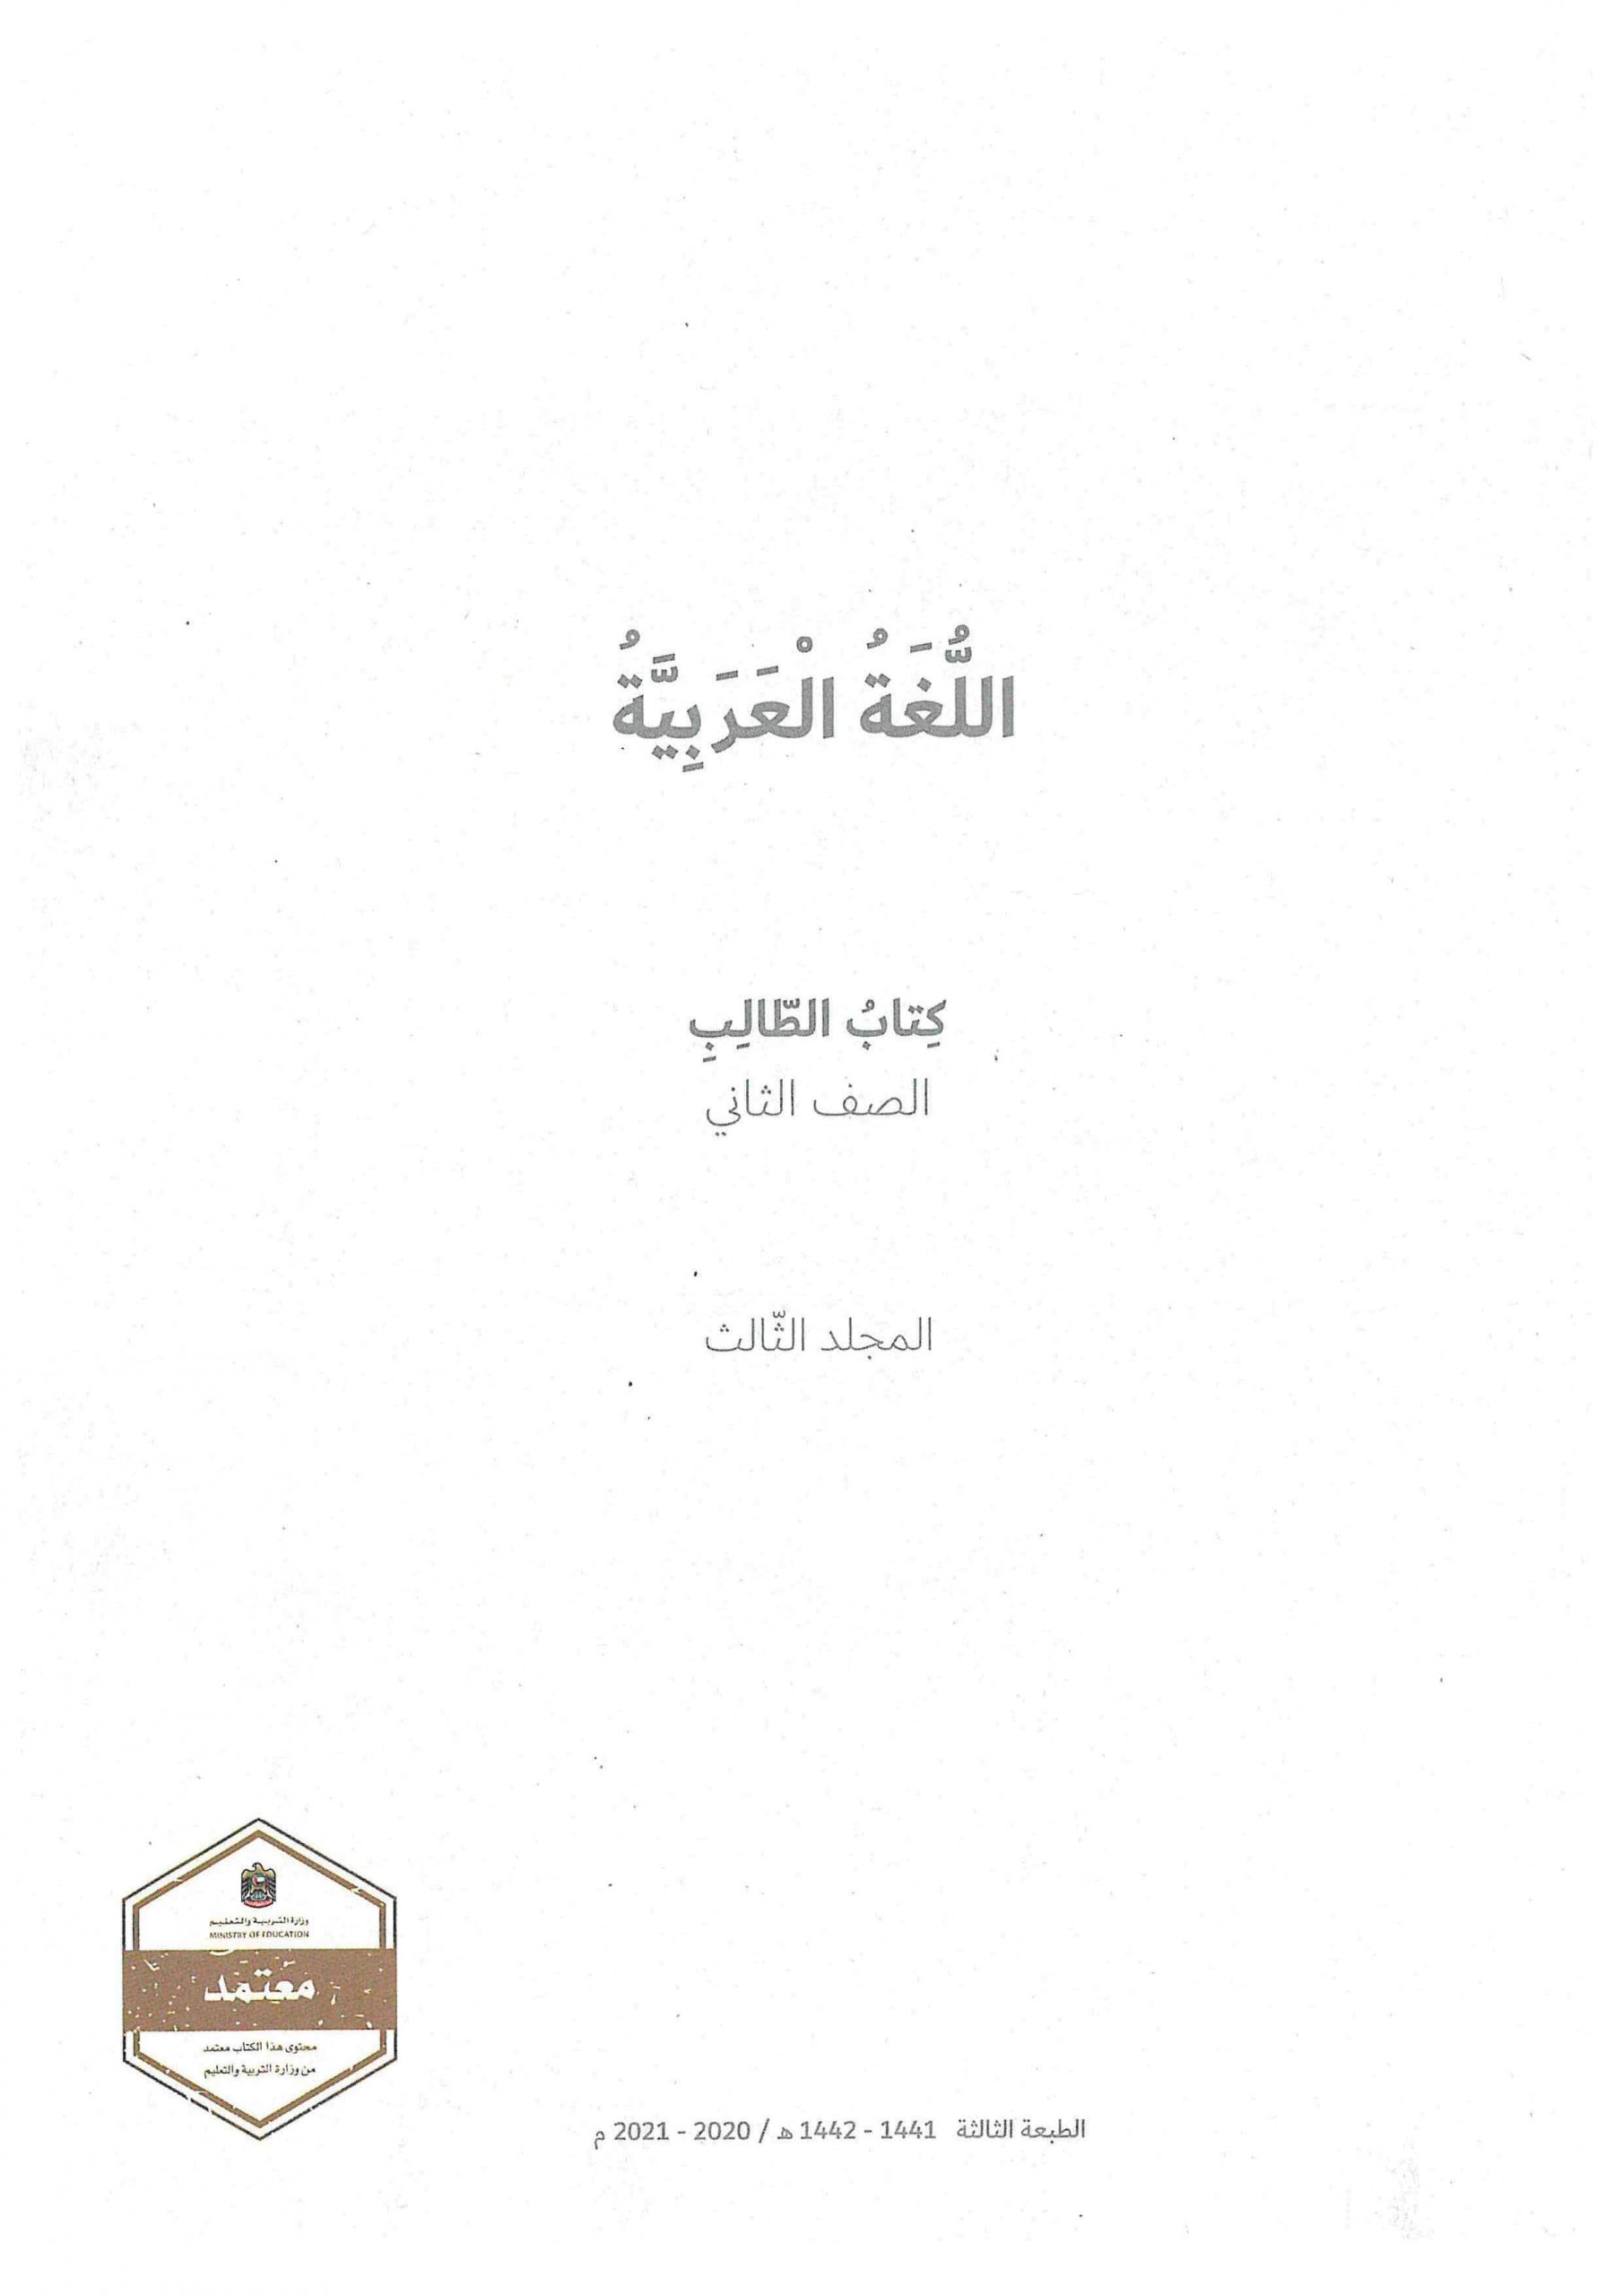 كتاب الطالب الفصل الدراسي الثاني 2020-2021 الصف الثاني مادة اللغة العربية 